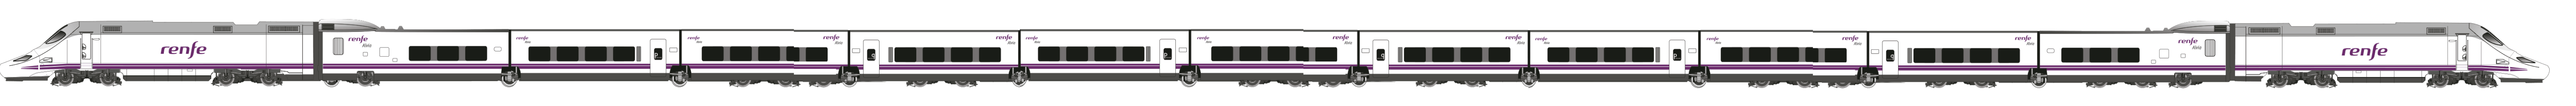 Tren de Renfe